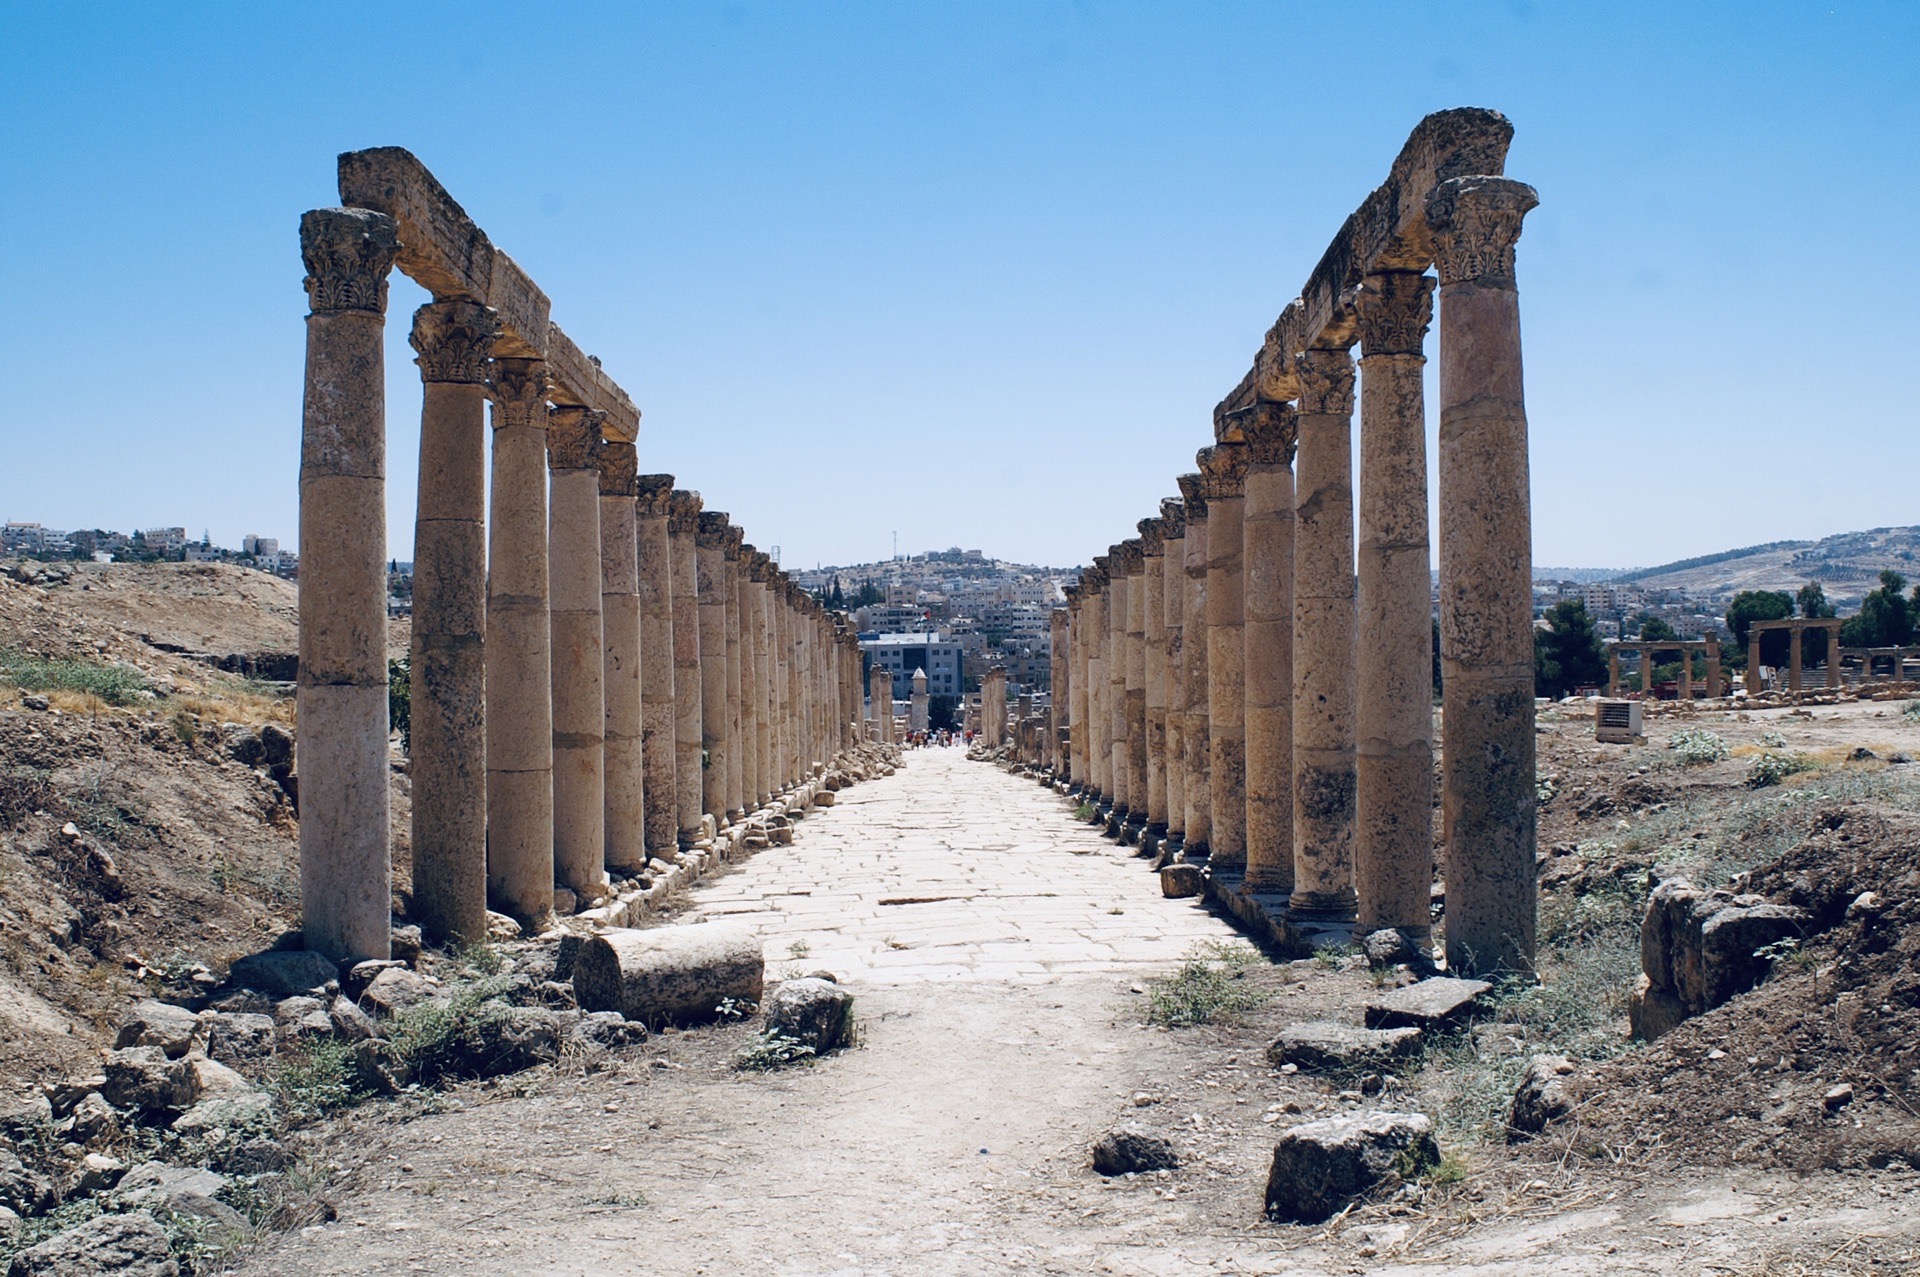 我见过的最壮观的罗马古城遗址。 作为约旦北部一座古老的城市，杰拉什轻轻拂拭掩埋了千年的黄沙，慢慢露出